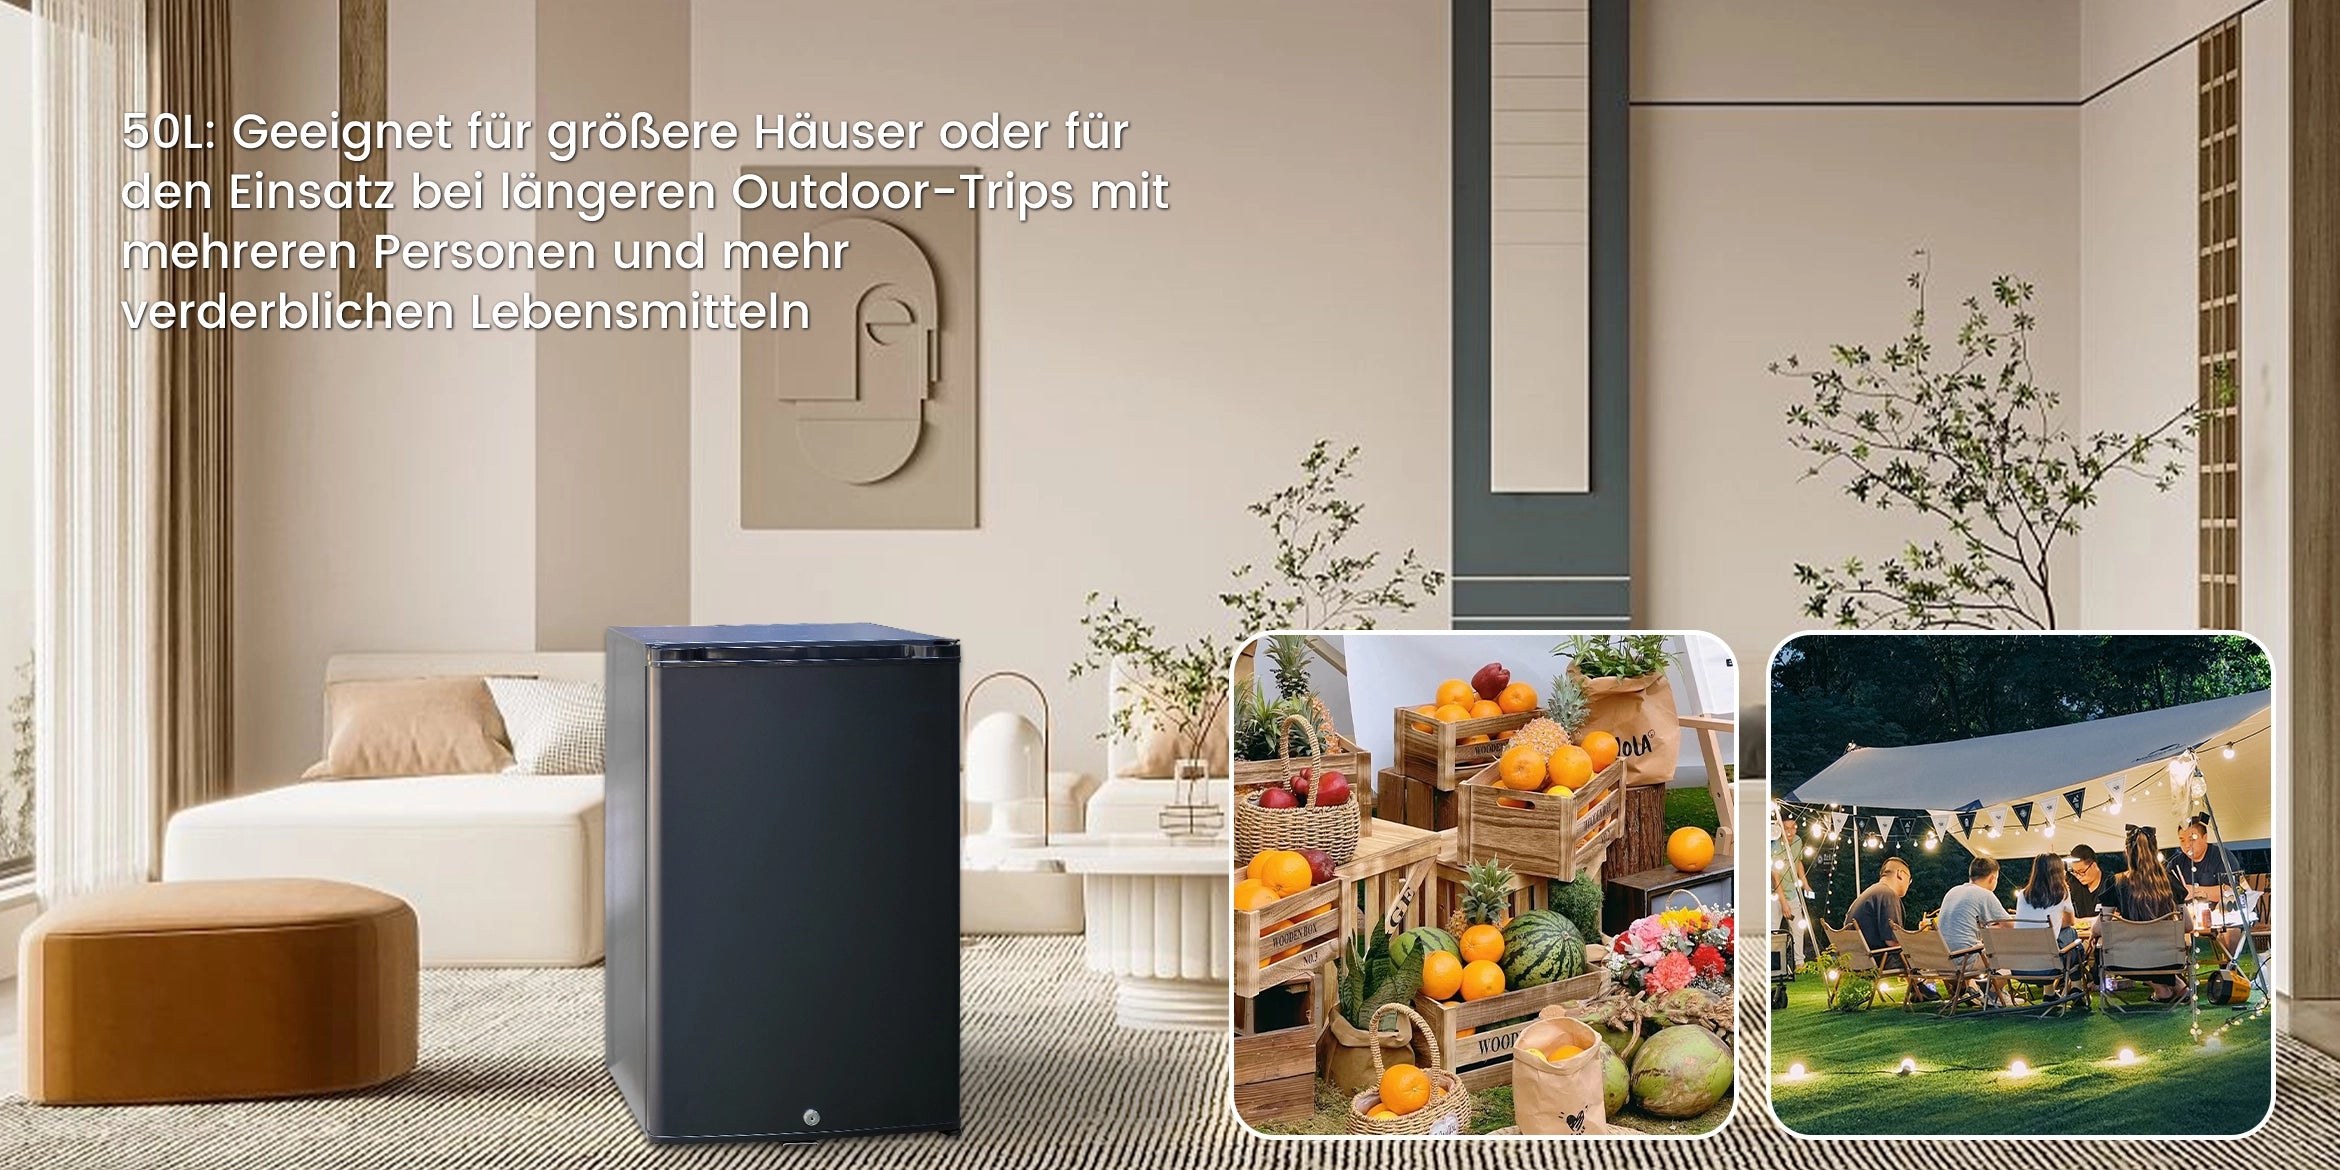 SMAD Mini-Kühlschrank - 30L Absorptionskühlschrank mit Schloss – Smad EU